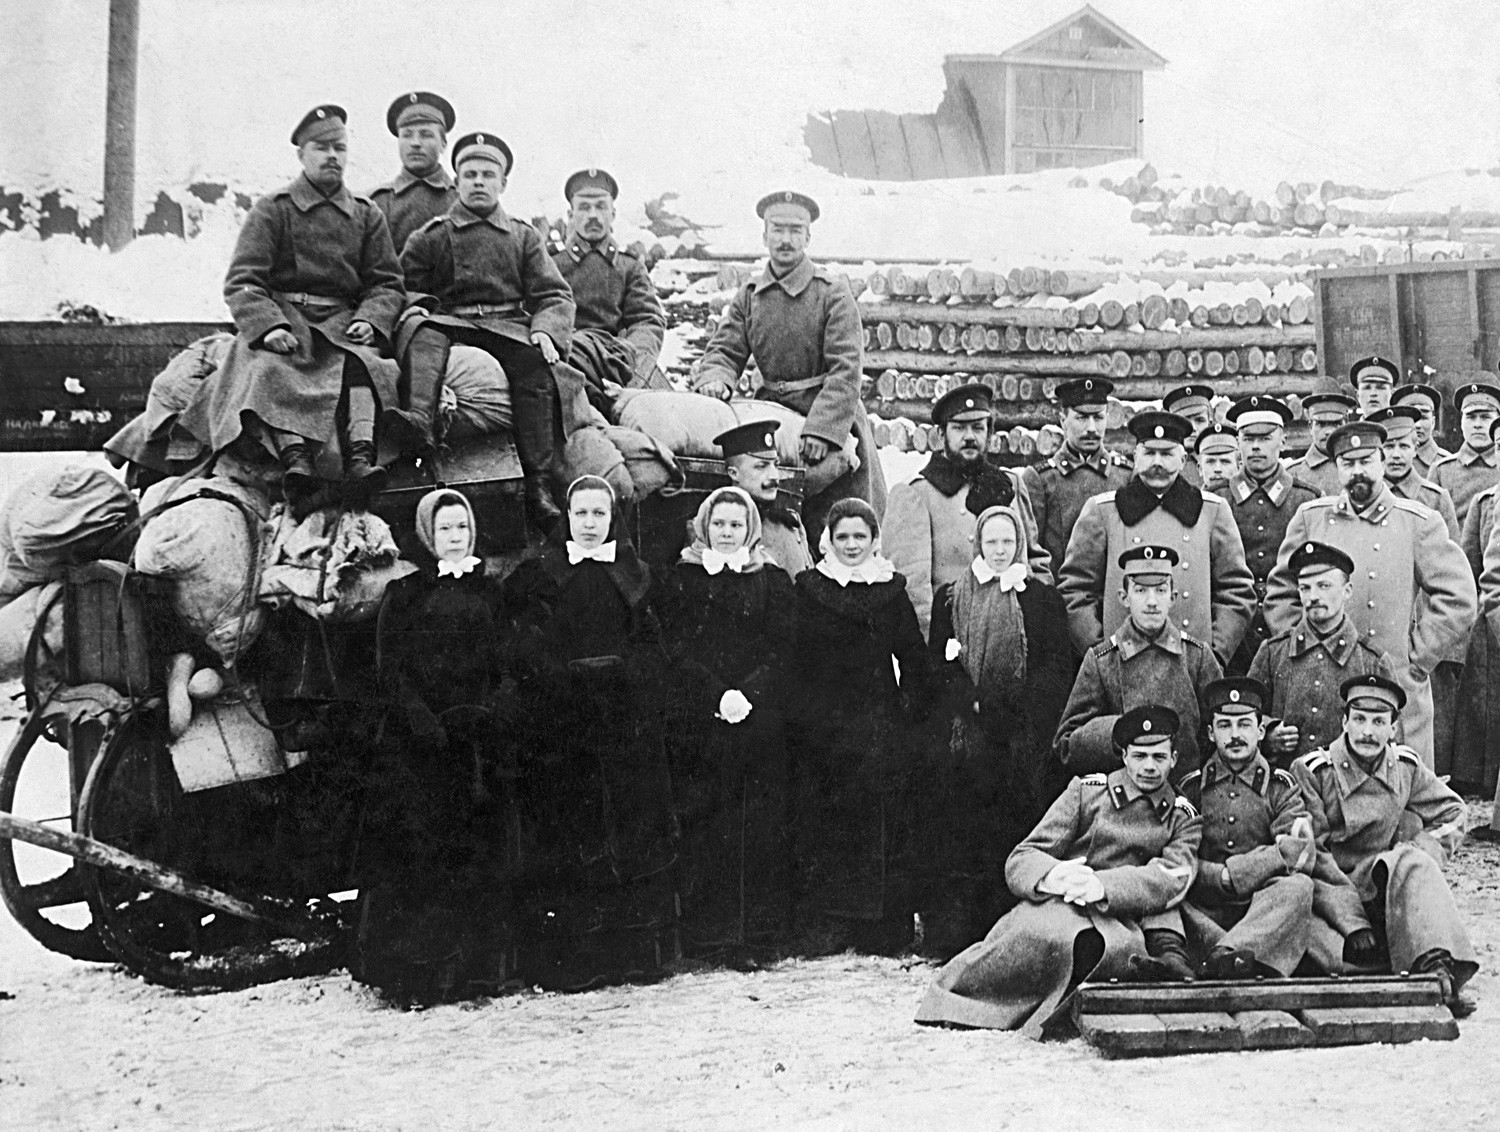 Membros de um destacamento da Cruz Vermelha russa durante a Primeira Guerra Mundial, por volta de 1915